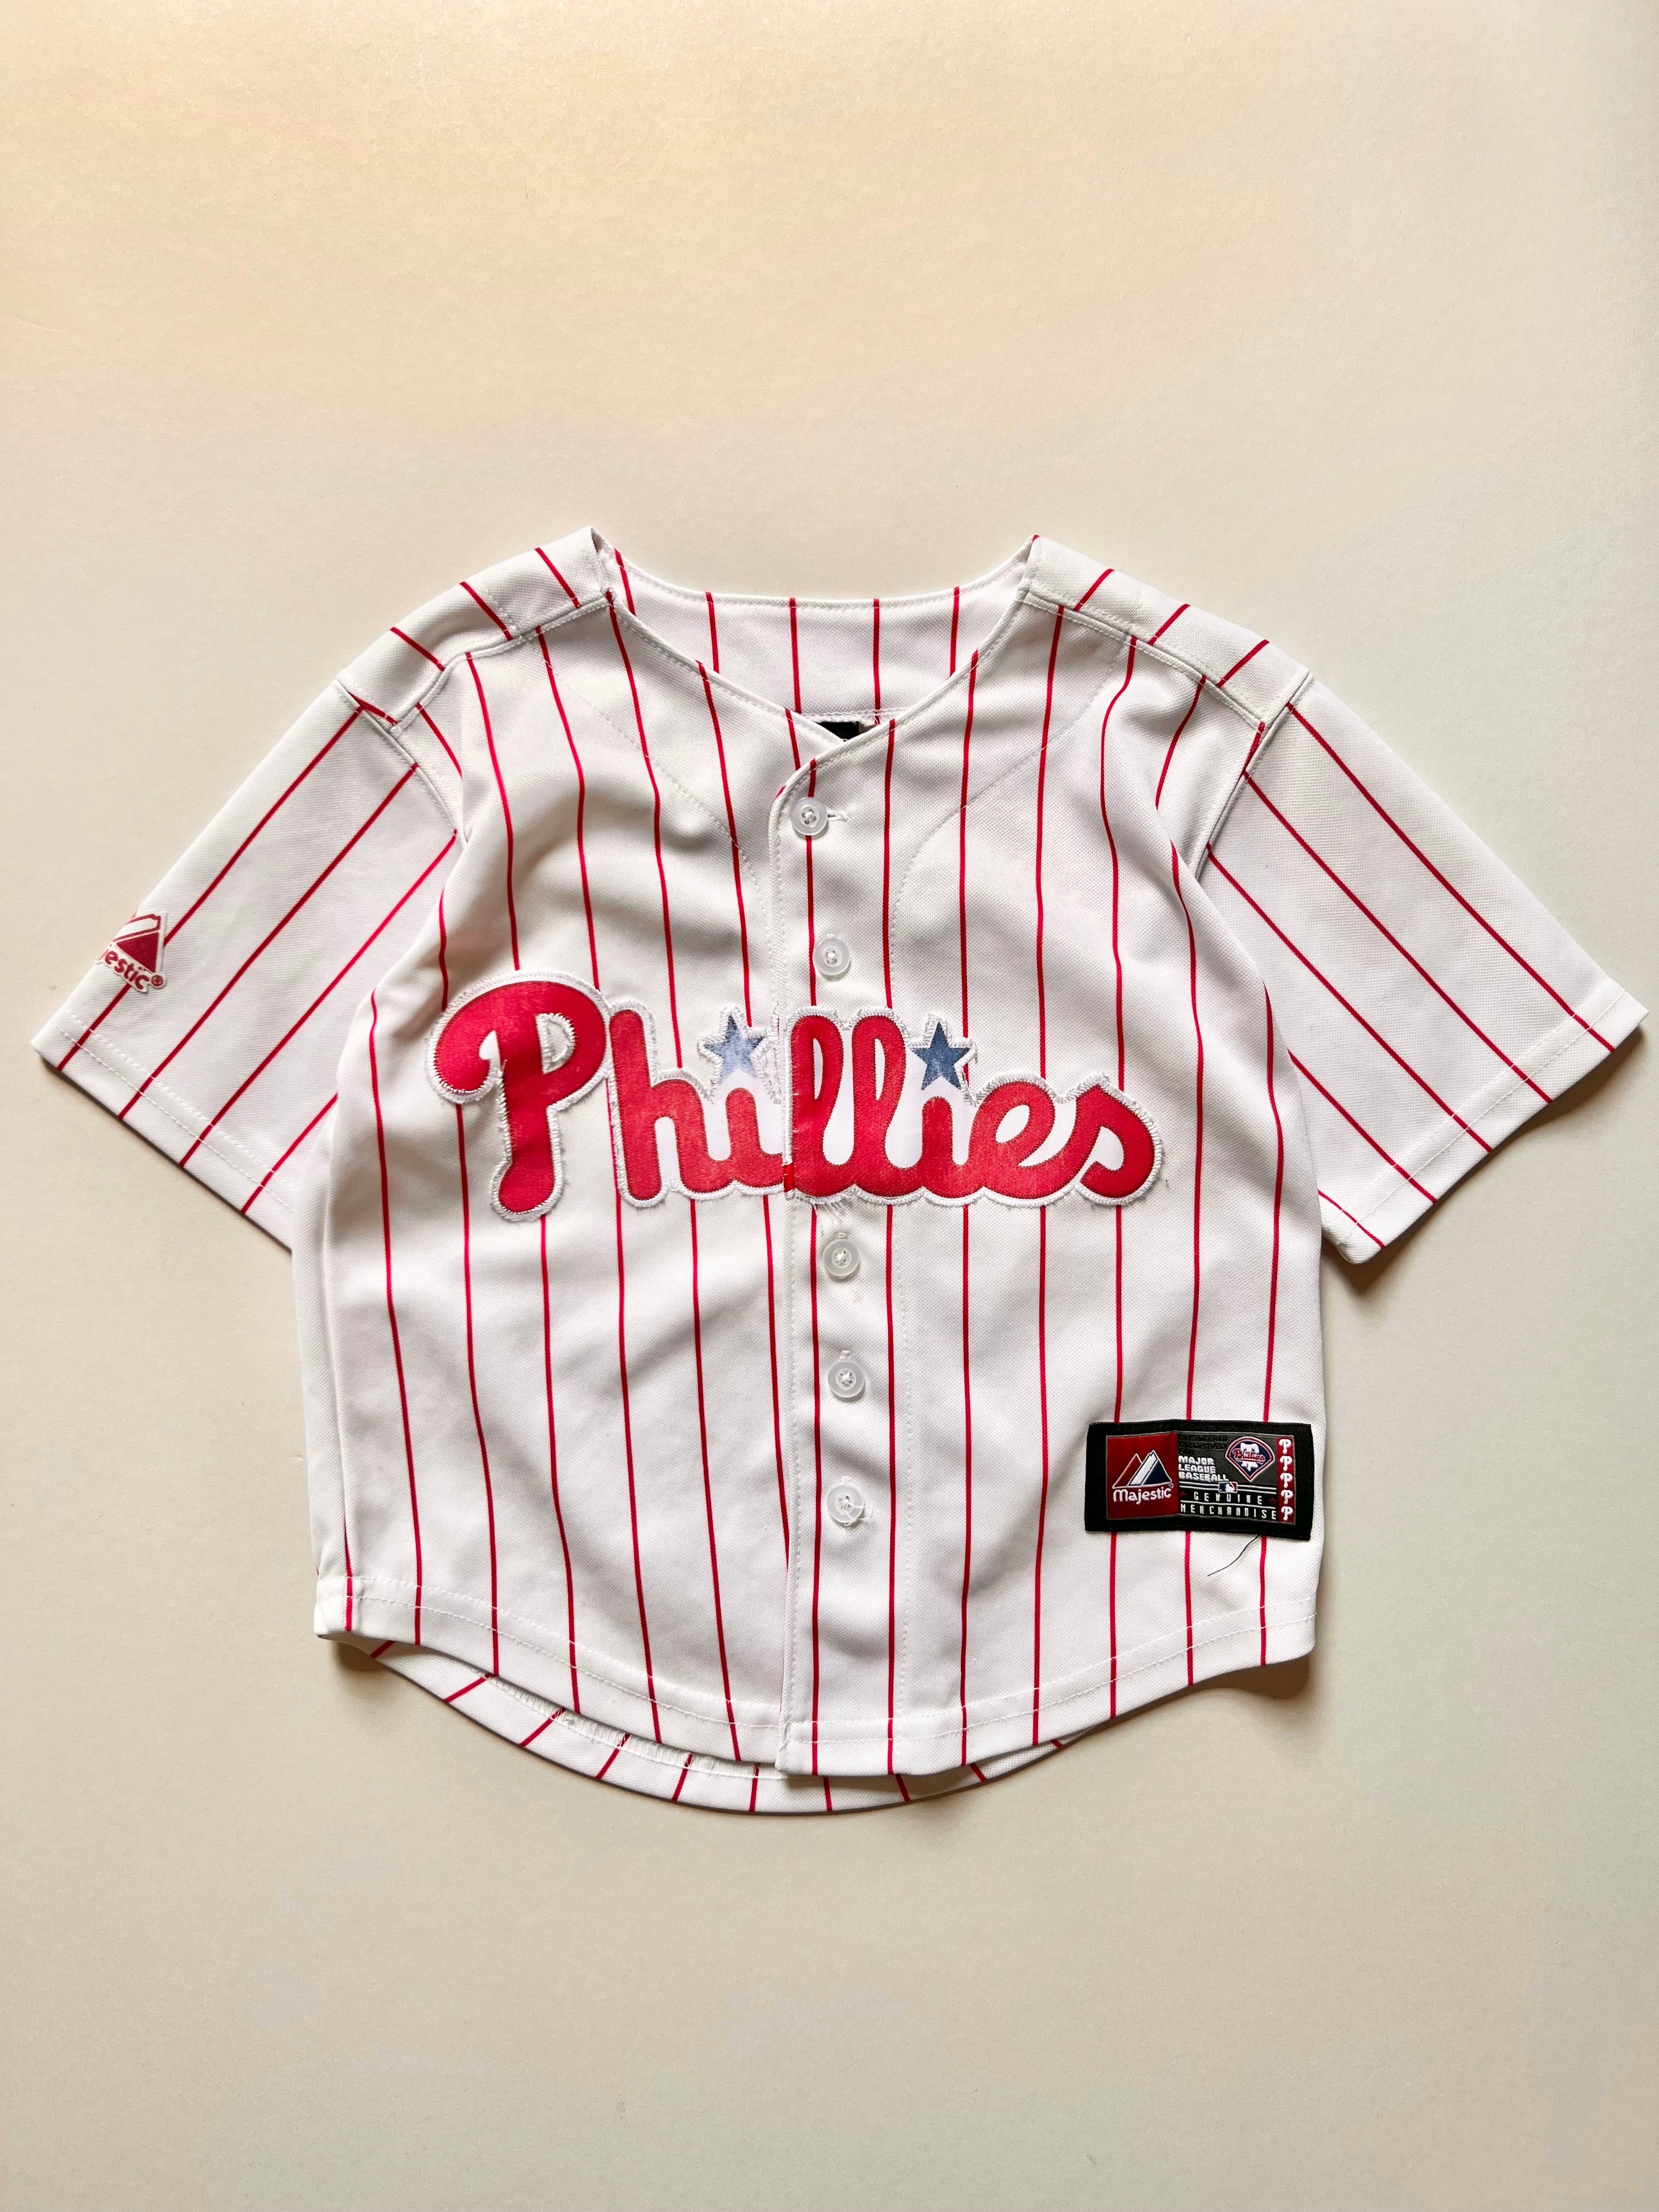 Phillies Baseball Jersey Age 3-4